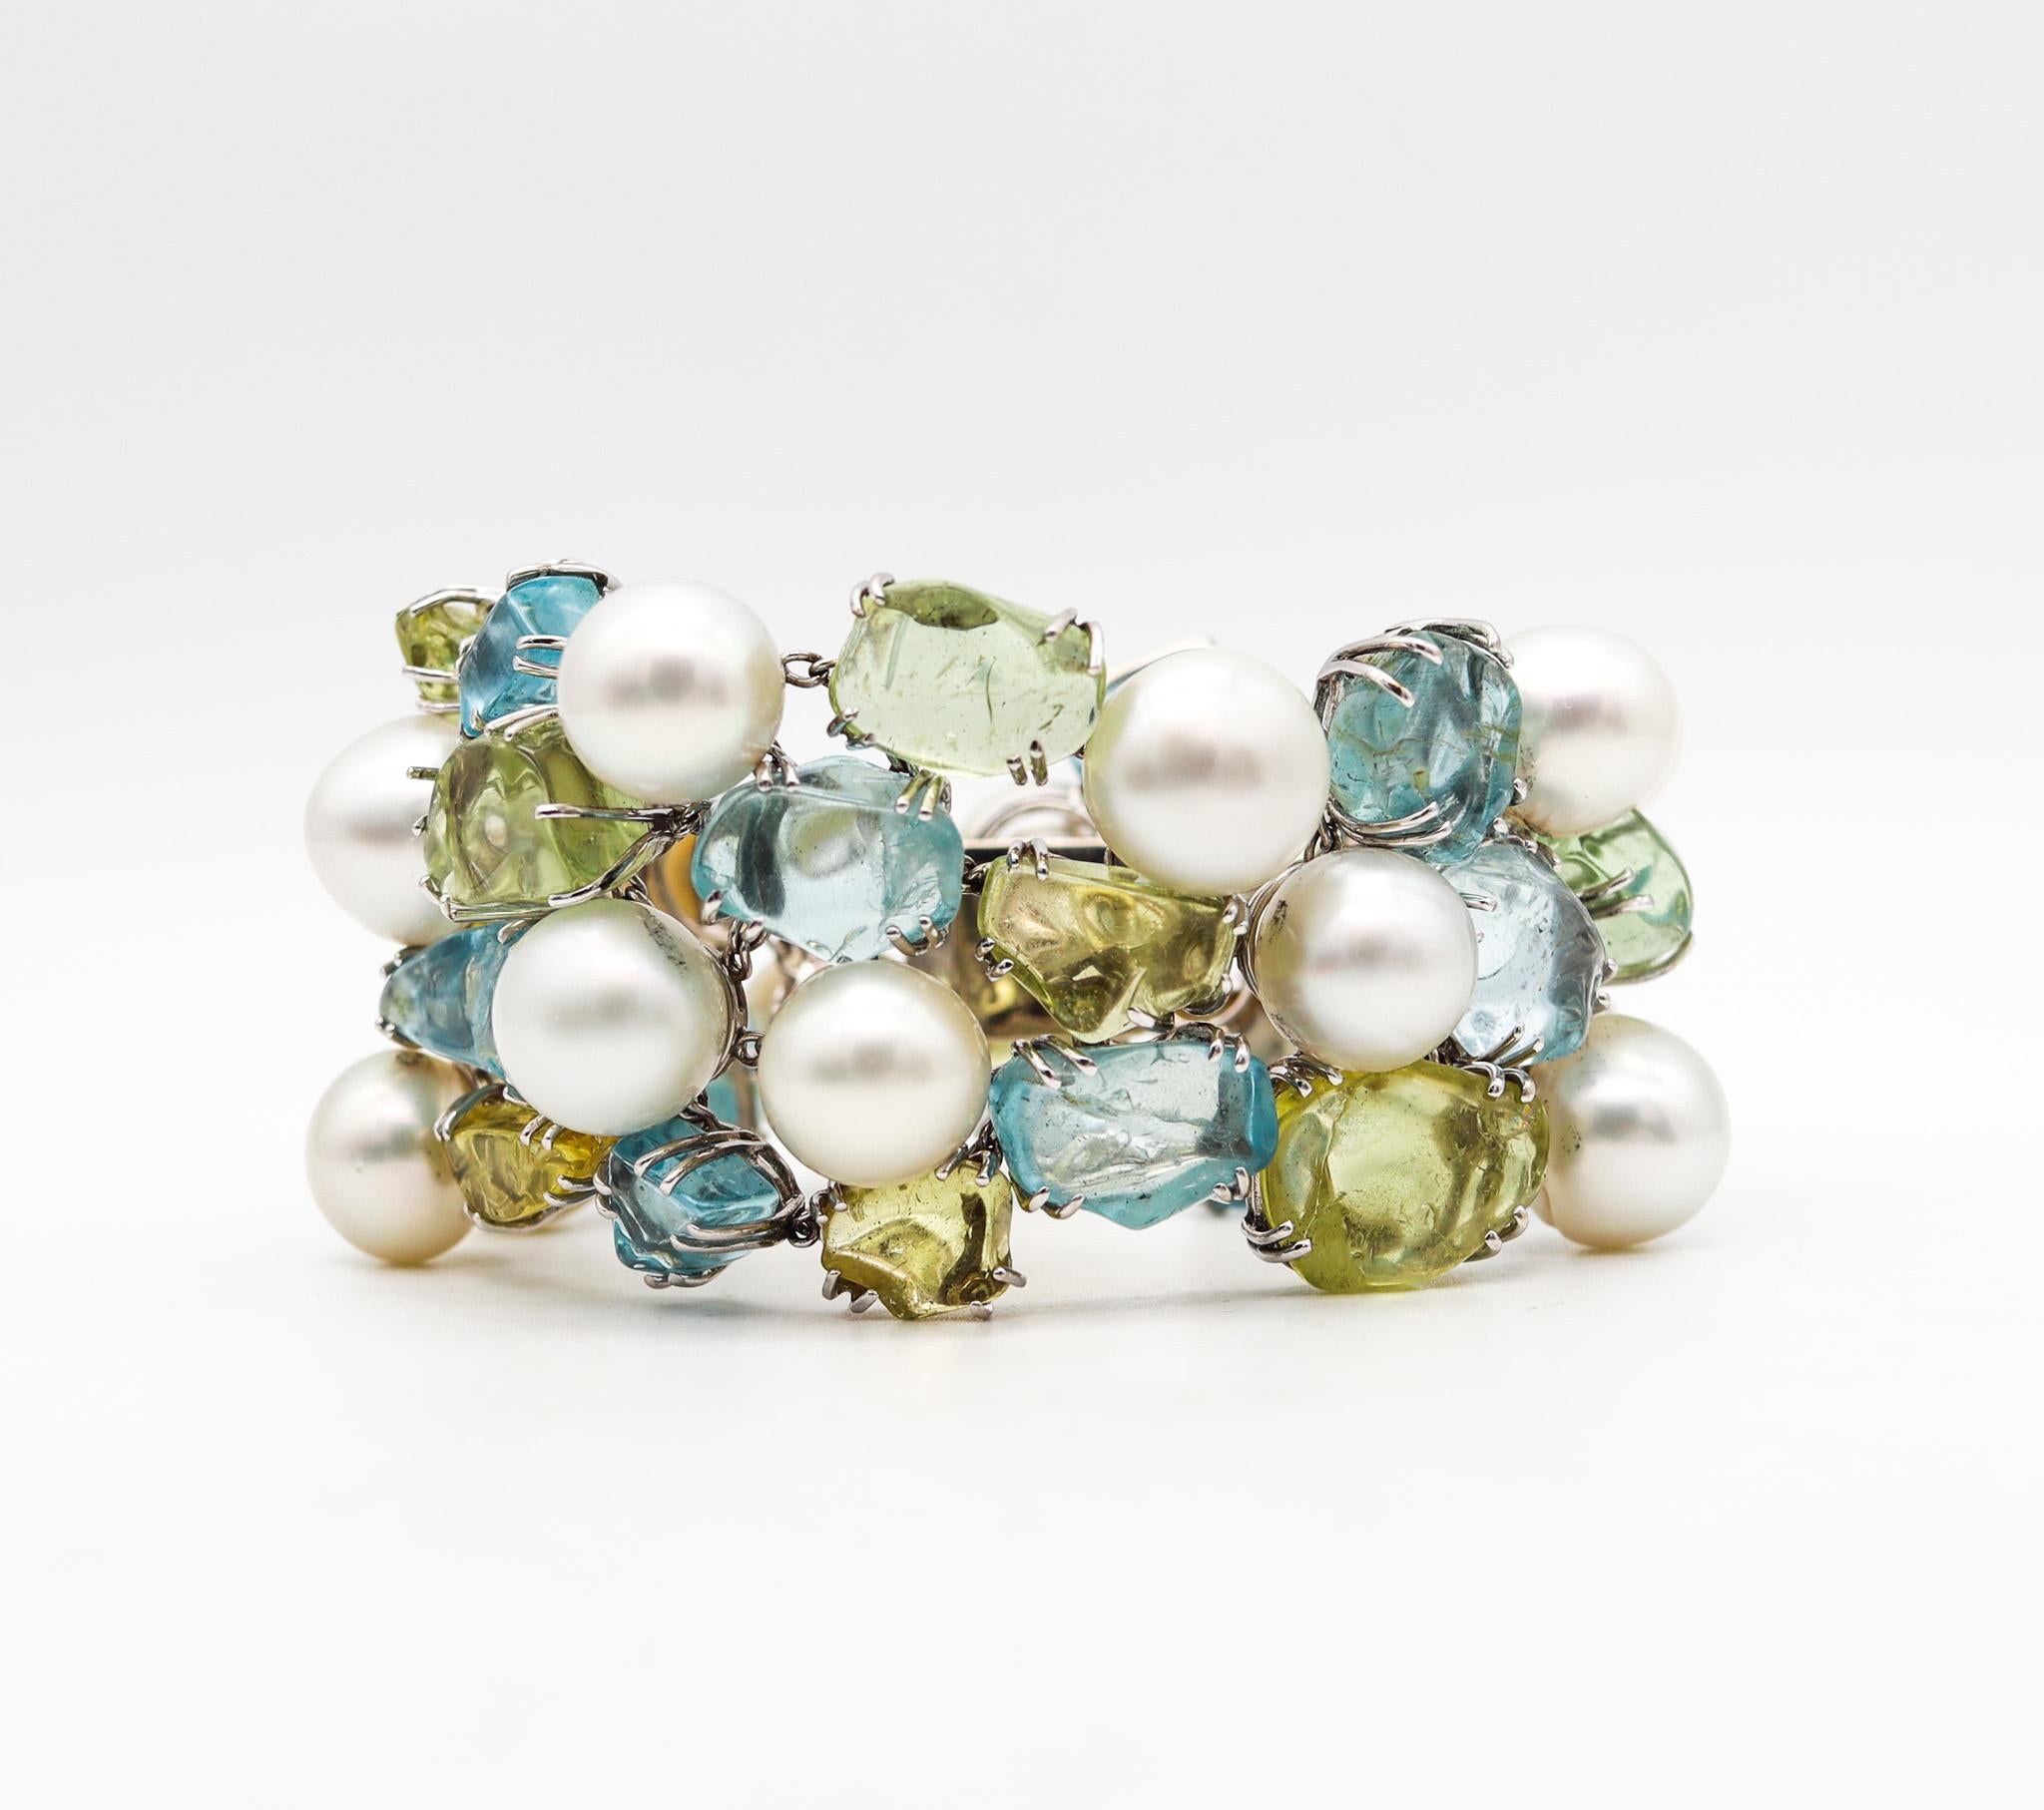 Bracelet de perles et de pierres précieuses conçu par Salavetti Milano.

Un grand bracelet avec des perles des mers du sud, des aigues-marines et des béryls verts, créé à Milan en Italie par la maison de joaillerie Salavetti. Whiting avec des